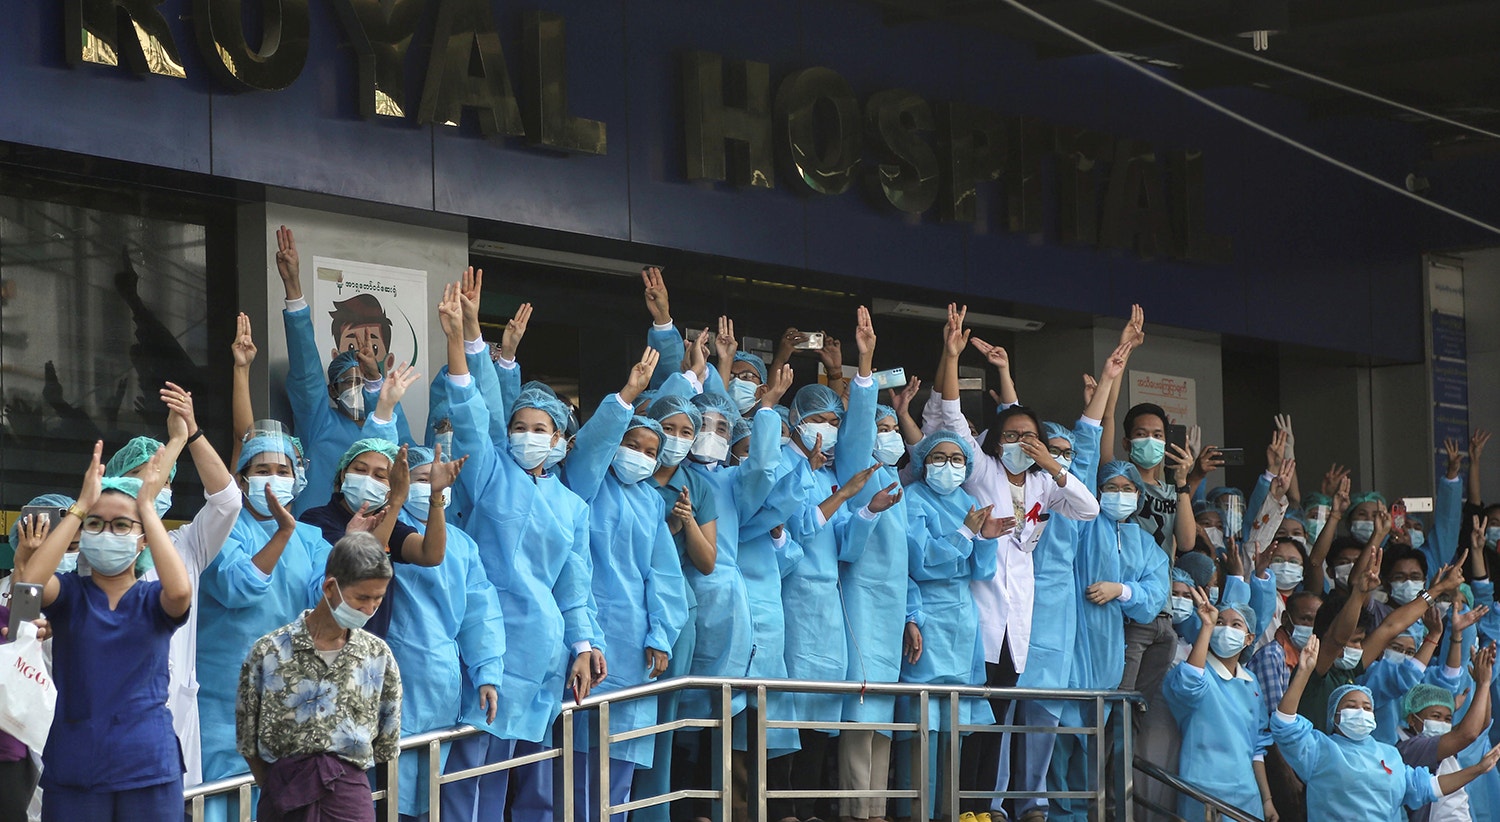  Os profissionais de sa&uacute;de sa&iacute;ram &agrave; porta do hospital para saudar os manifestantes | Foto: Reuters 